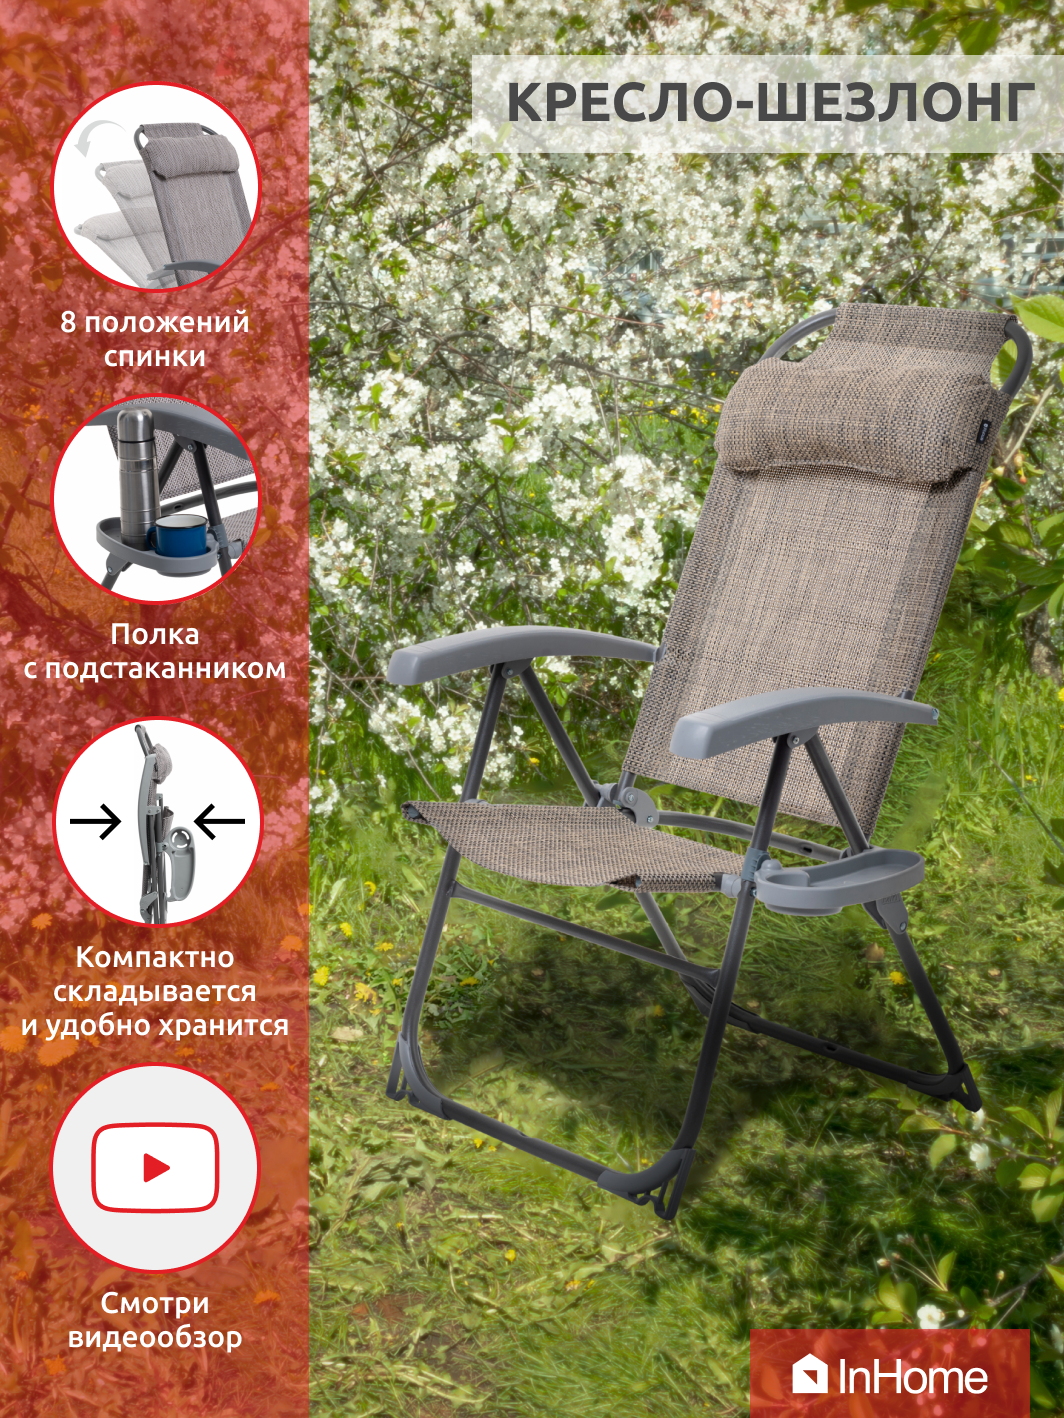 Складное садовое кресло-шезлонг для дома и дачи, для рыбалки и комфортного отдыха на природе